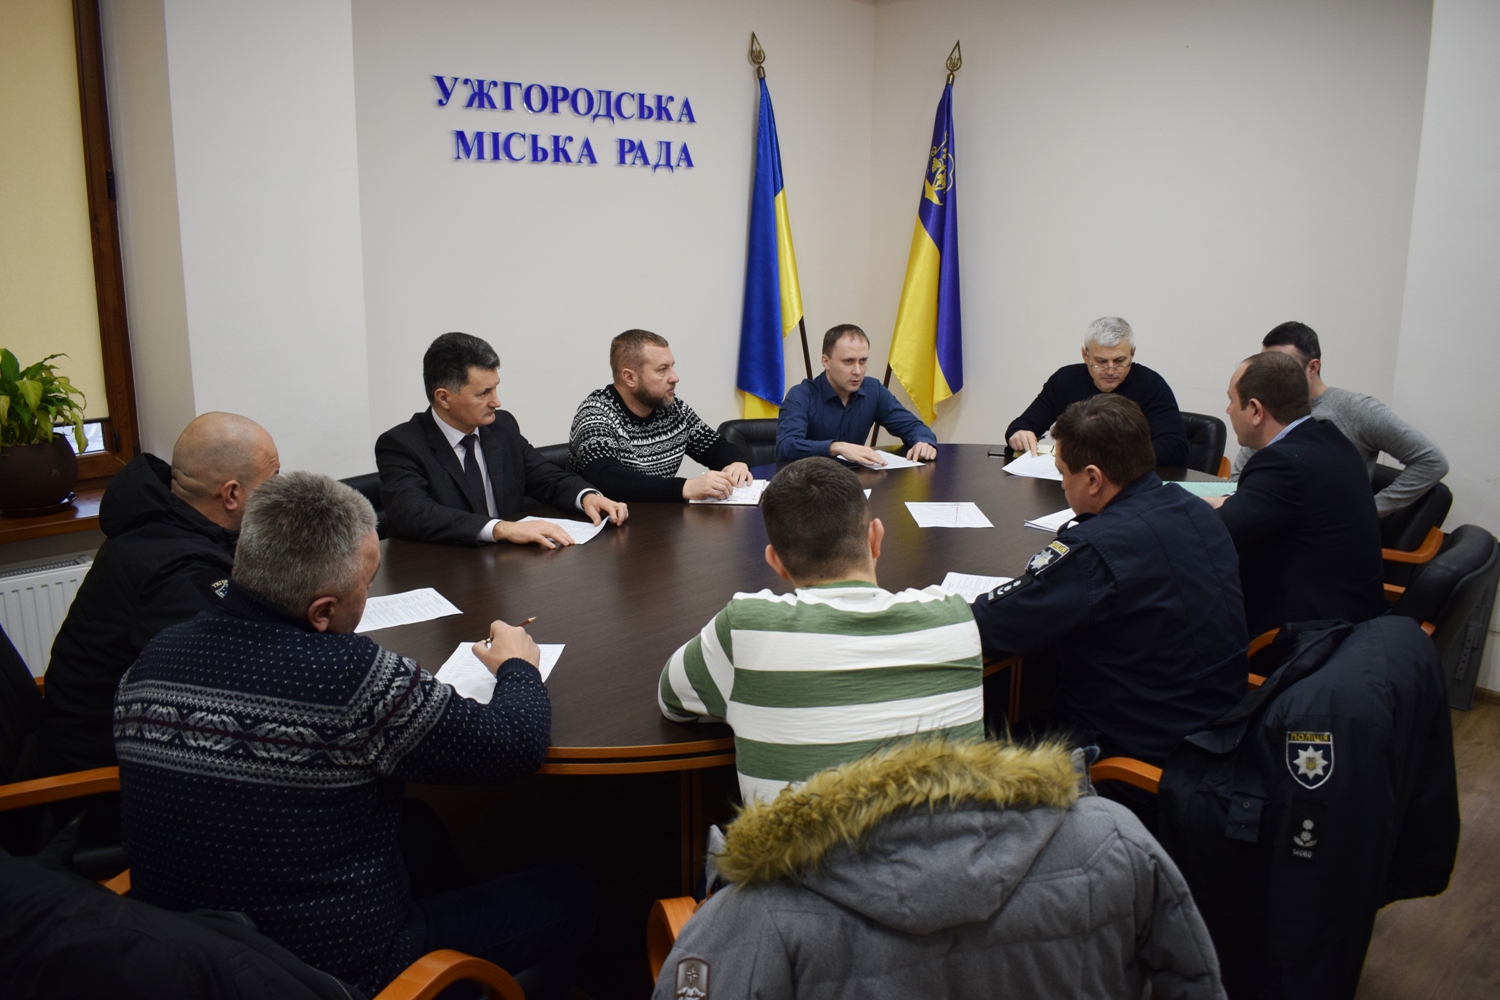 Засідання транспортної комісії відбулося в Ужгородській міській раді